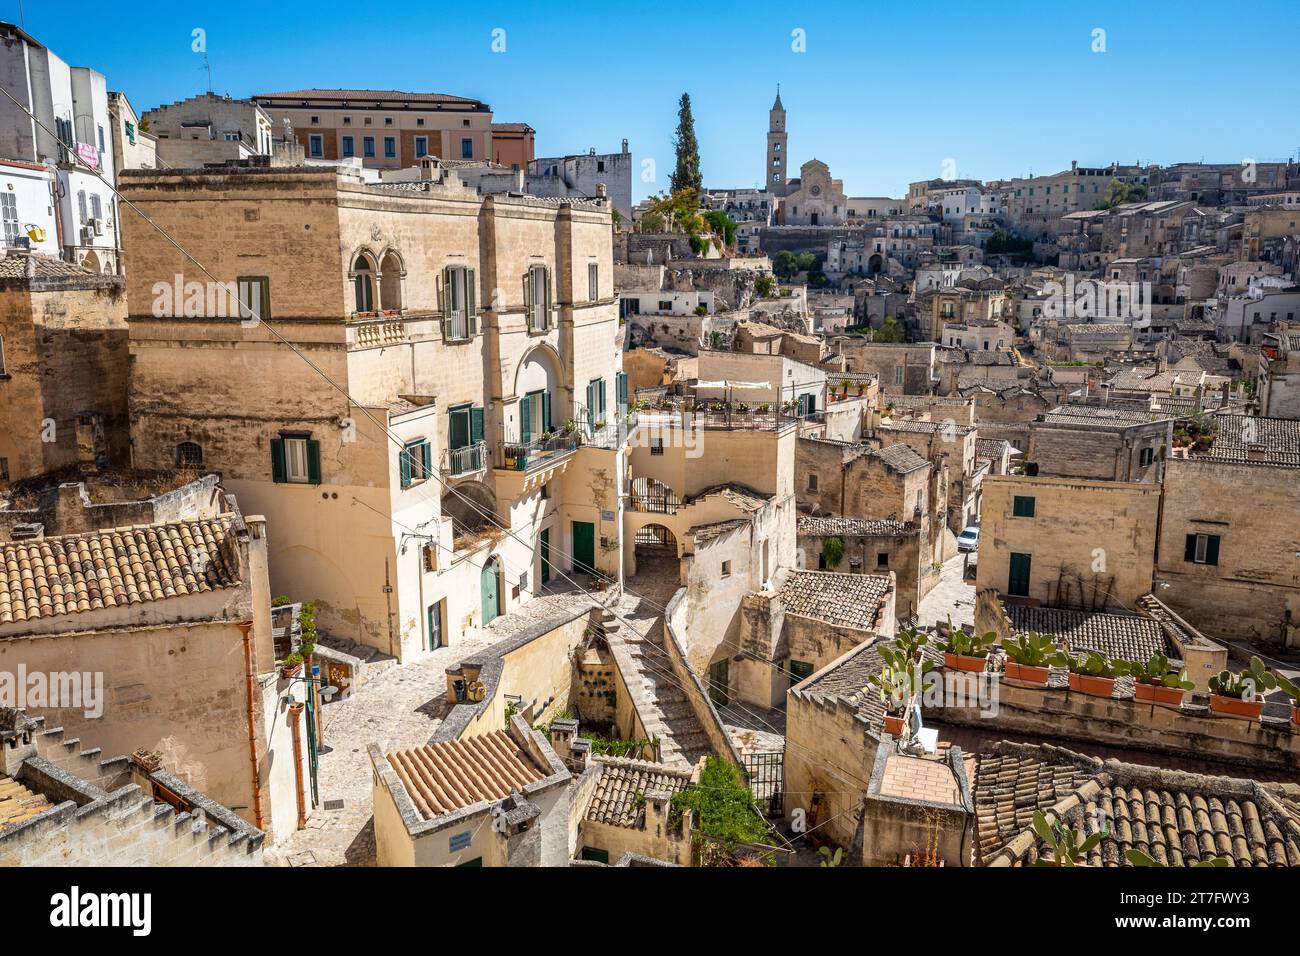 Matera est une ville sur un éperon rocheux dans la région de Basilicate, dans le sud de l'Italie Banque D'Images